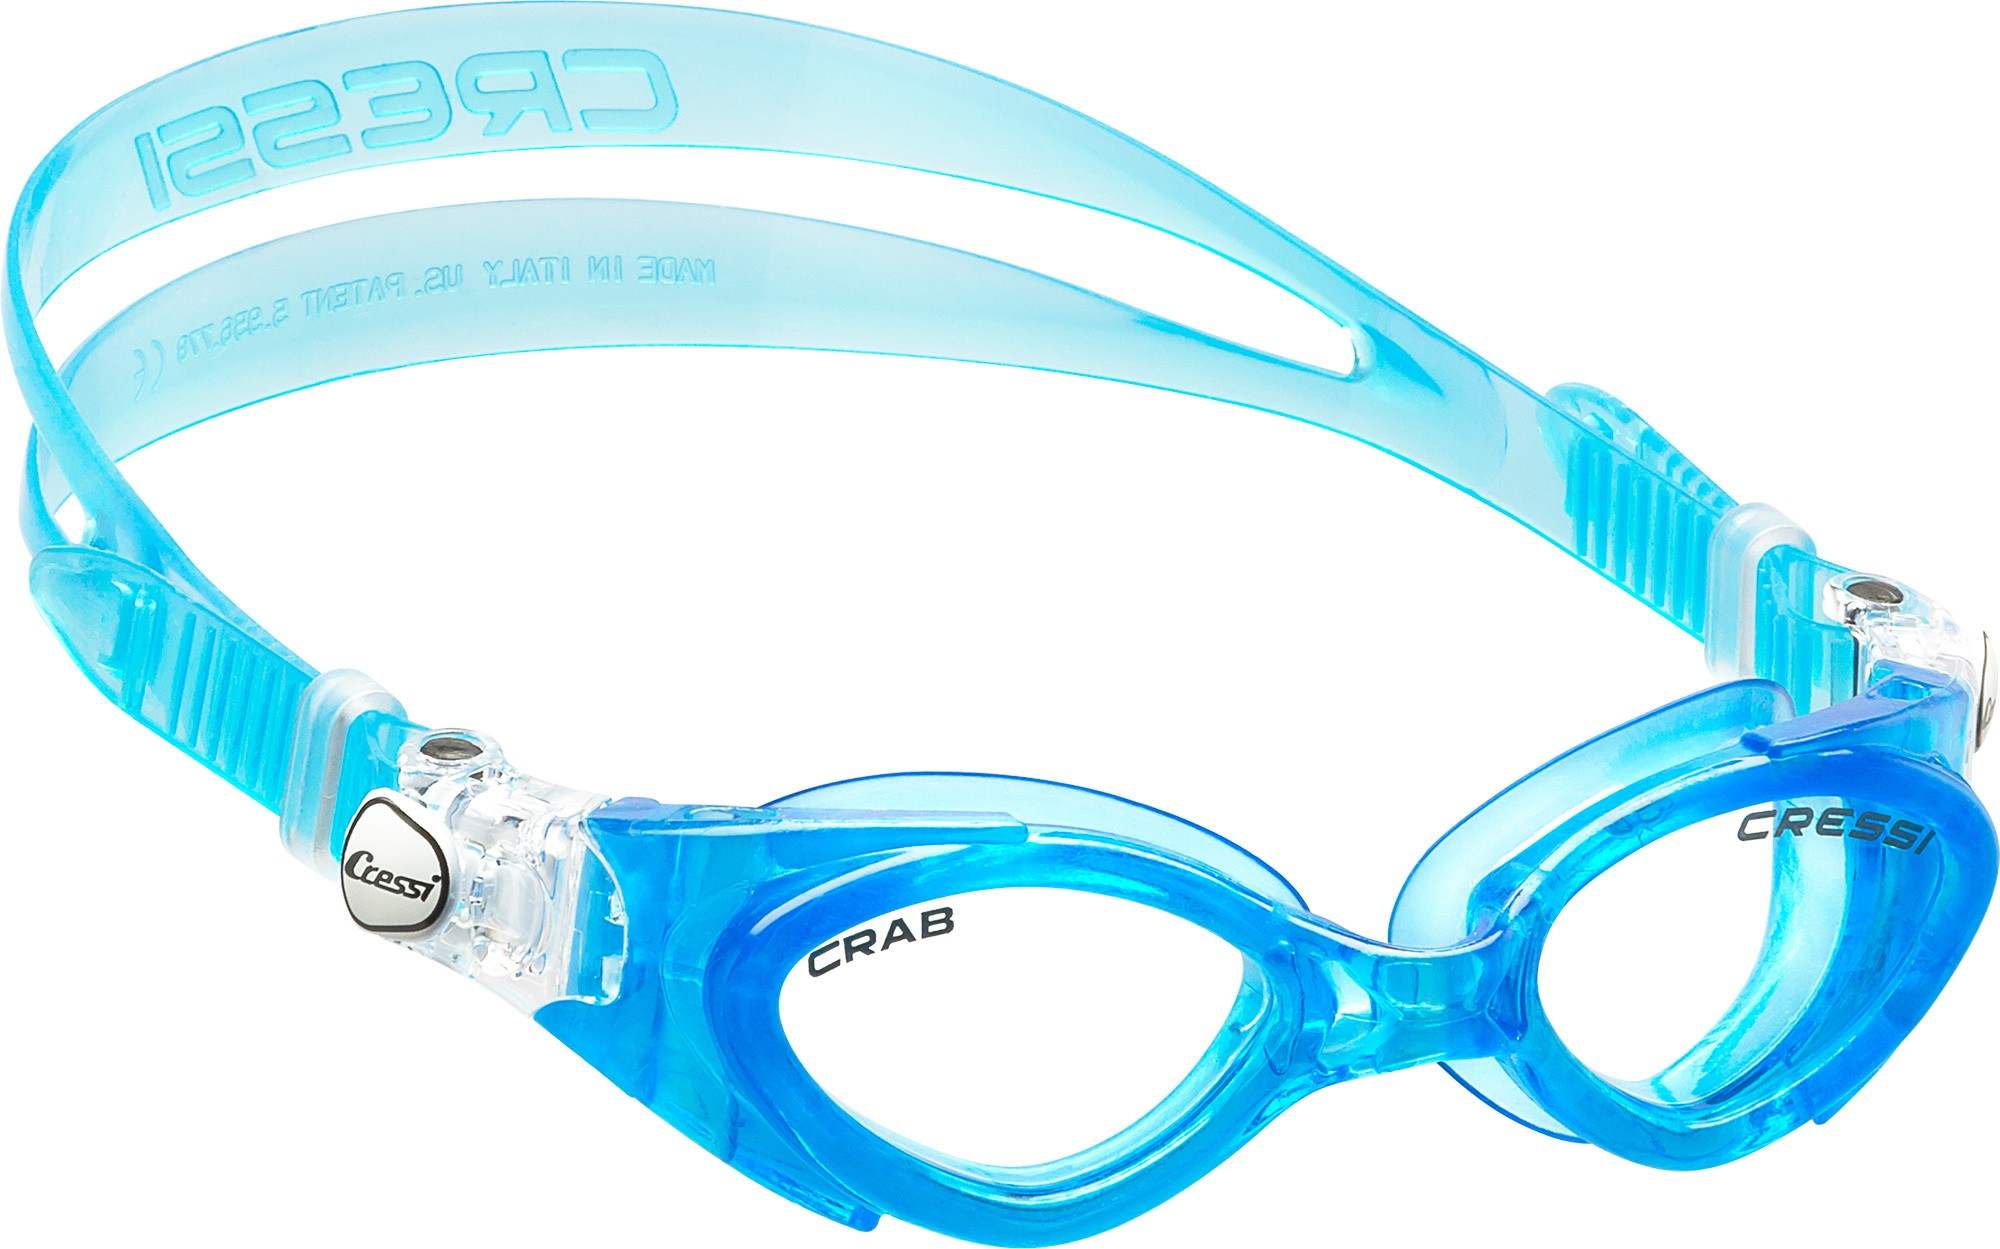 Cressi Crab Children’s Goggles Blue